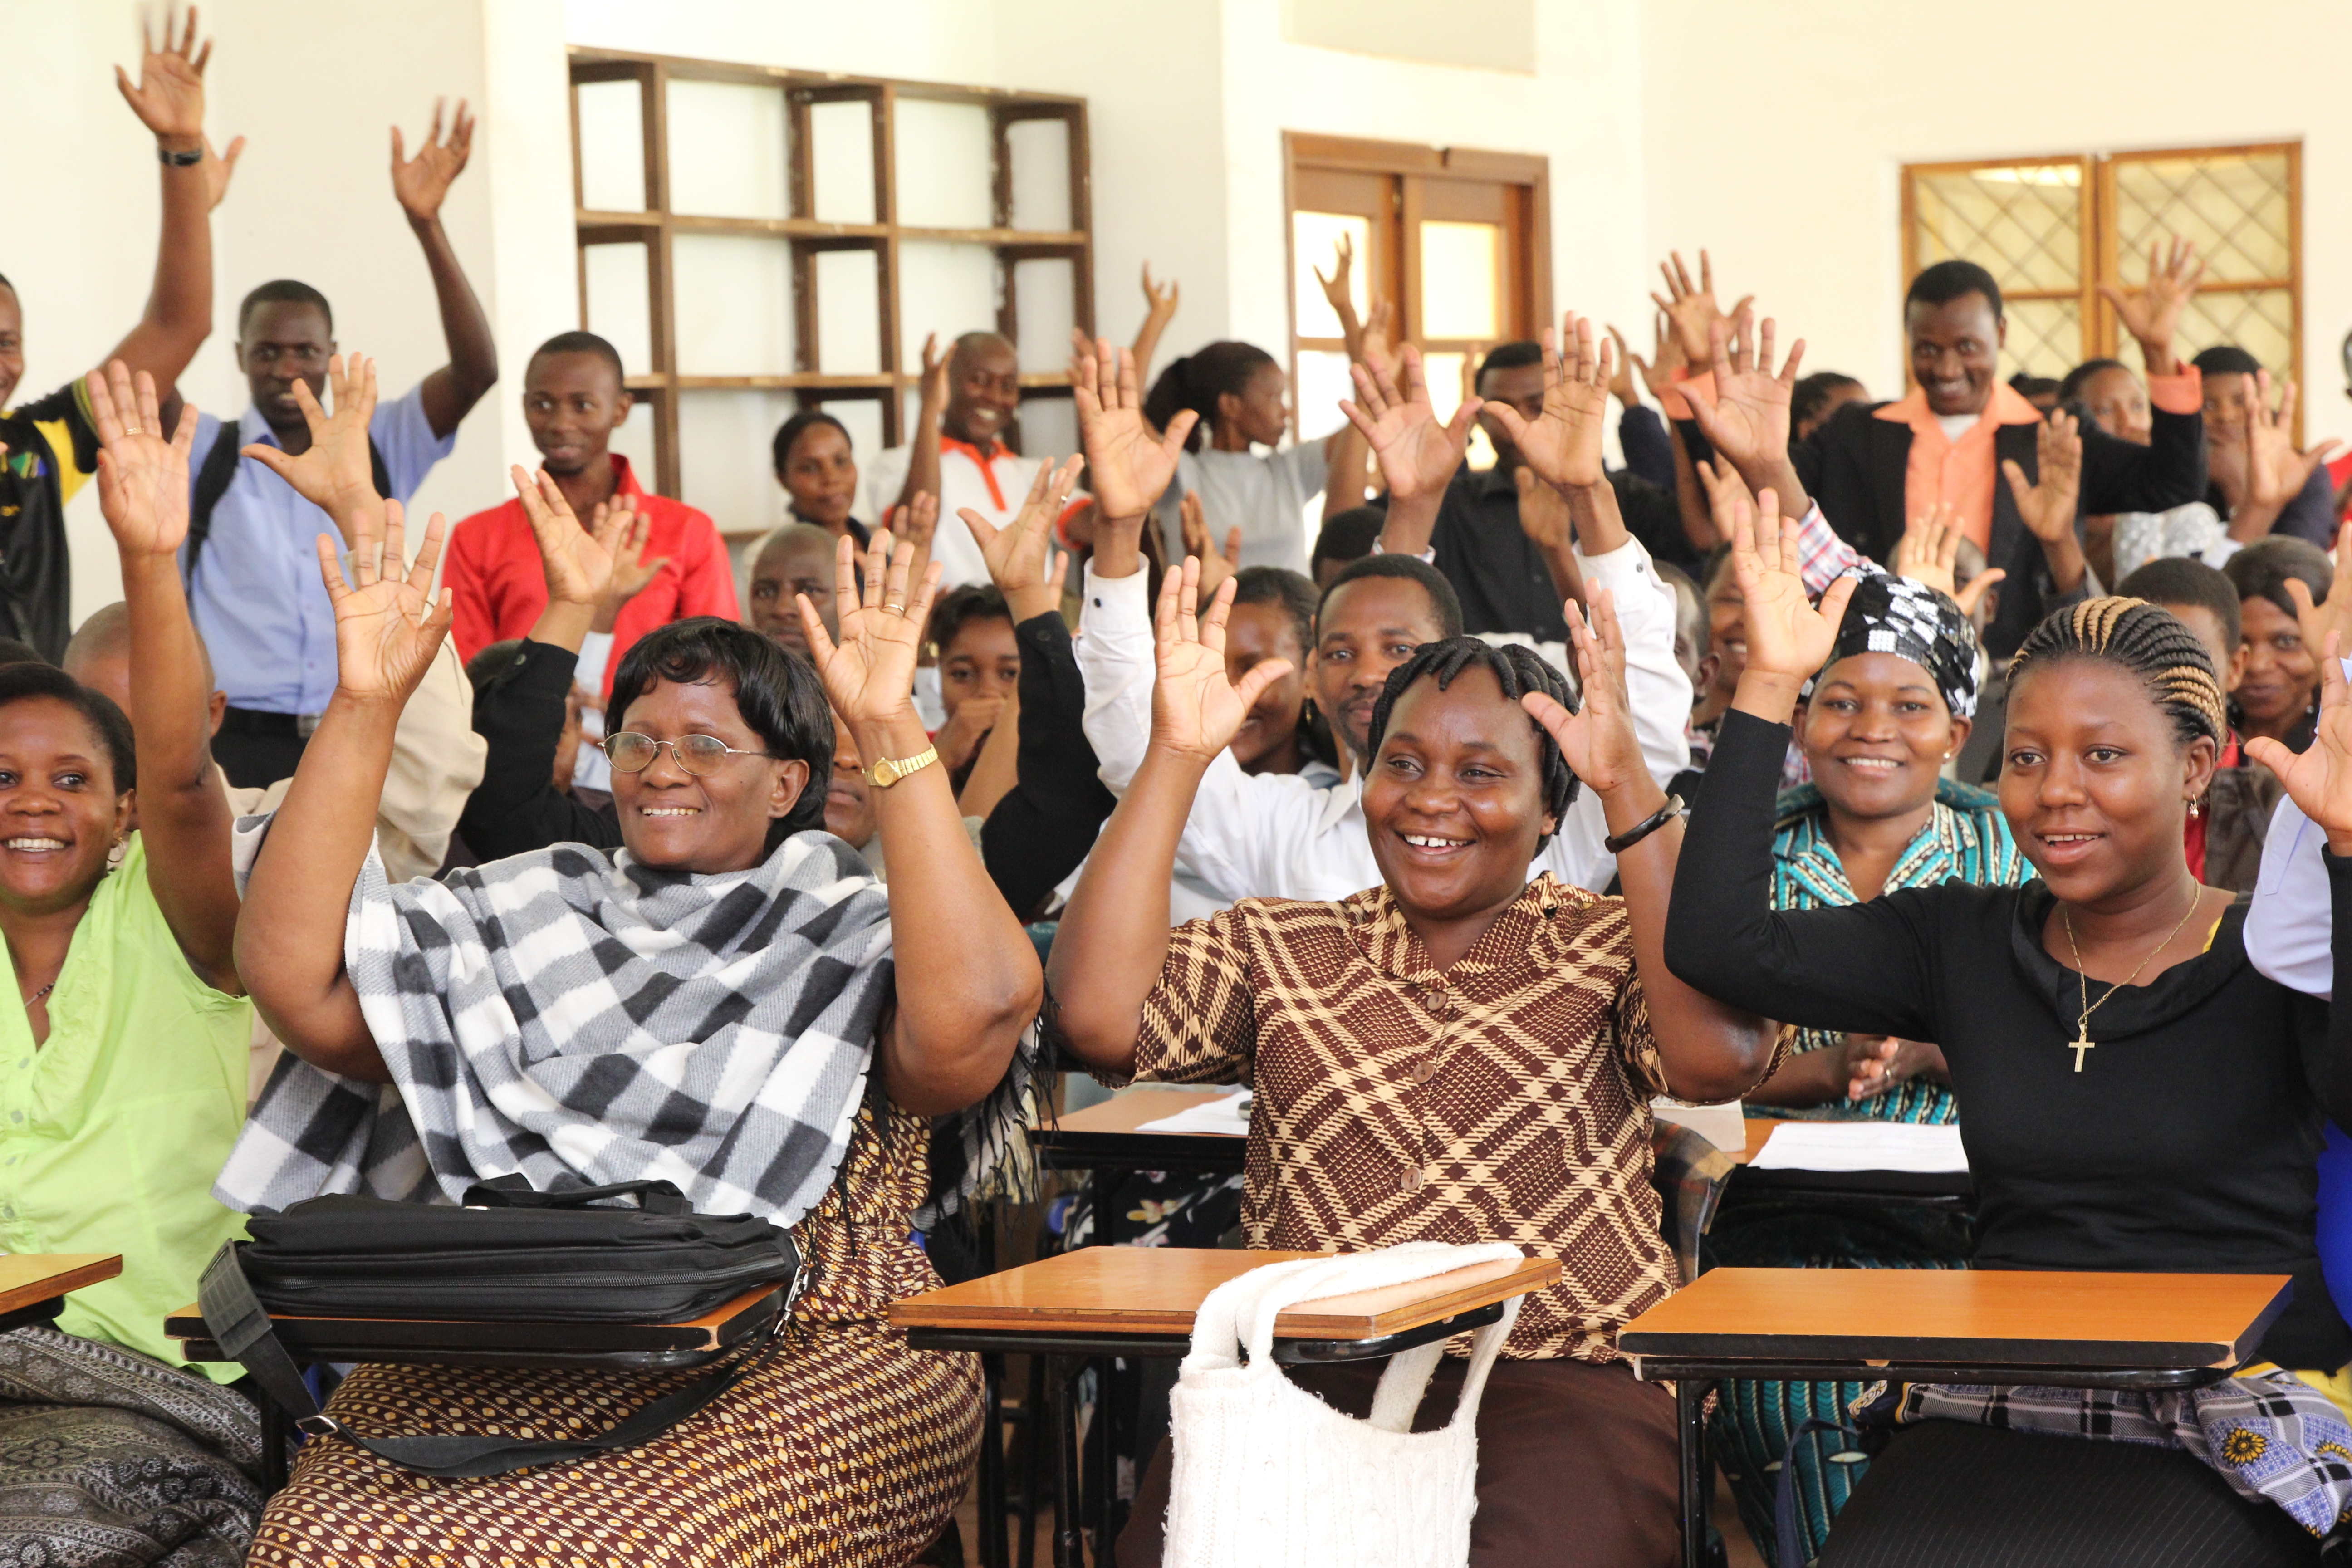 Specialundervisning för funktionshindrade barn förutsätter att det finns utbildade lärare som kan ta i beaktande barnens varierande förmågor. Vid kyrkans universitet i Tanzania utbildas speciallärare. Foto Sari Lehtelä